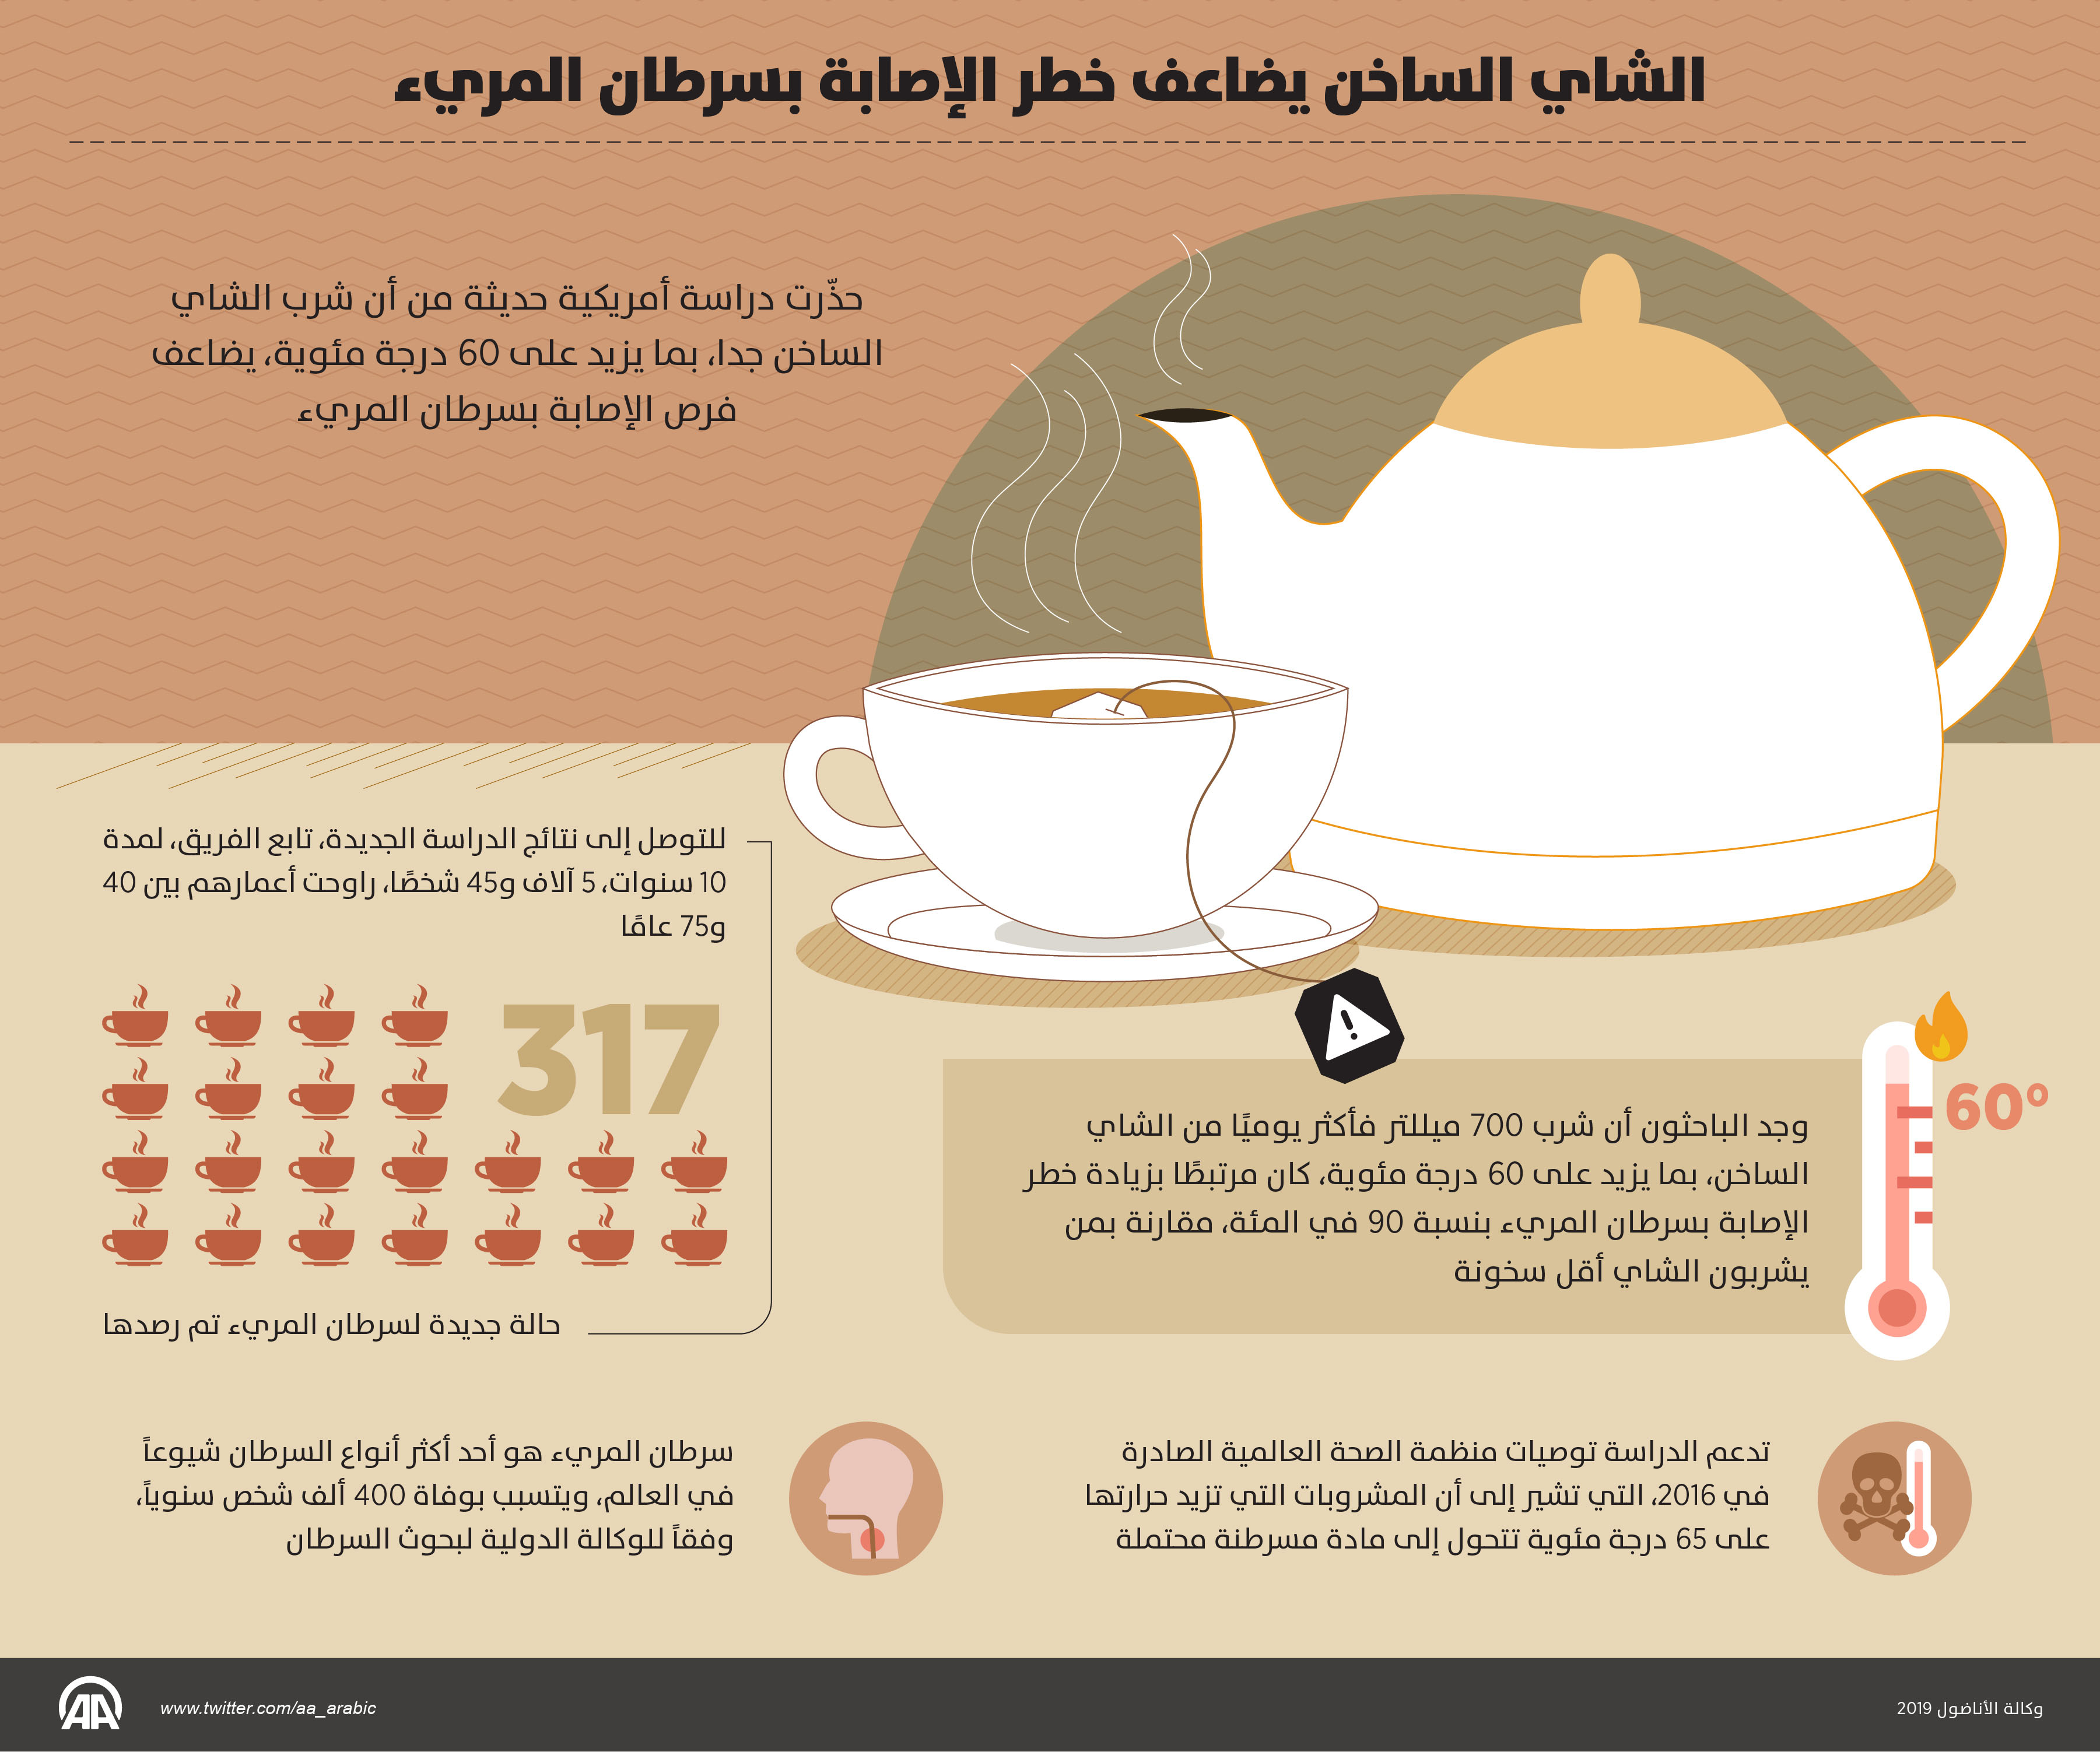 الشاي الساخن يضاعف خطر الإصابة بسرطان المريء